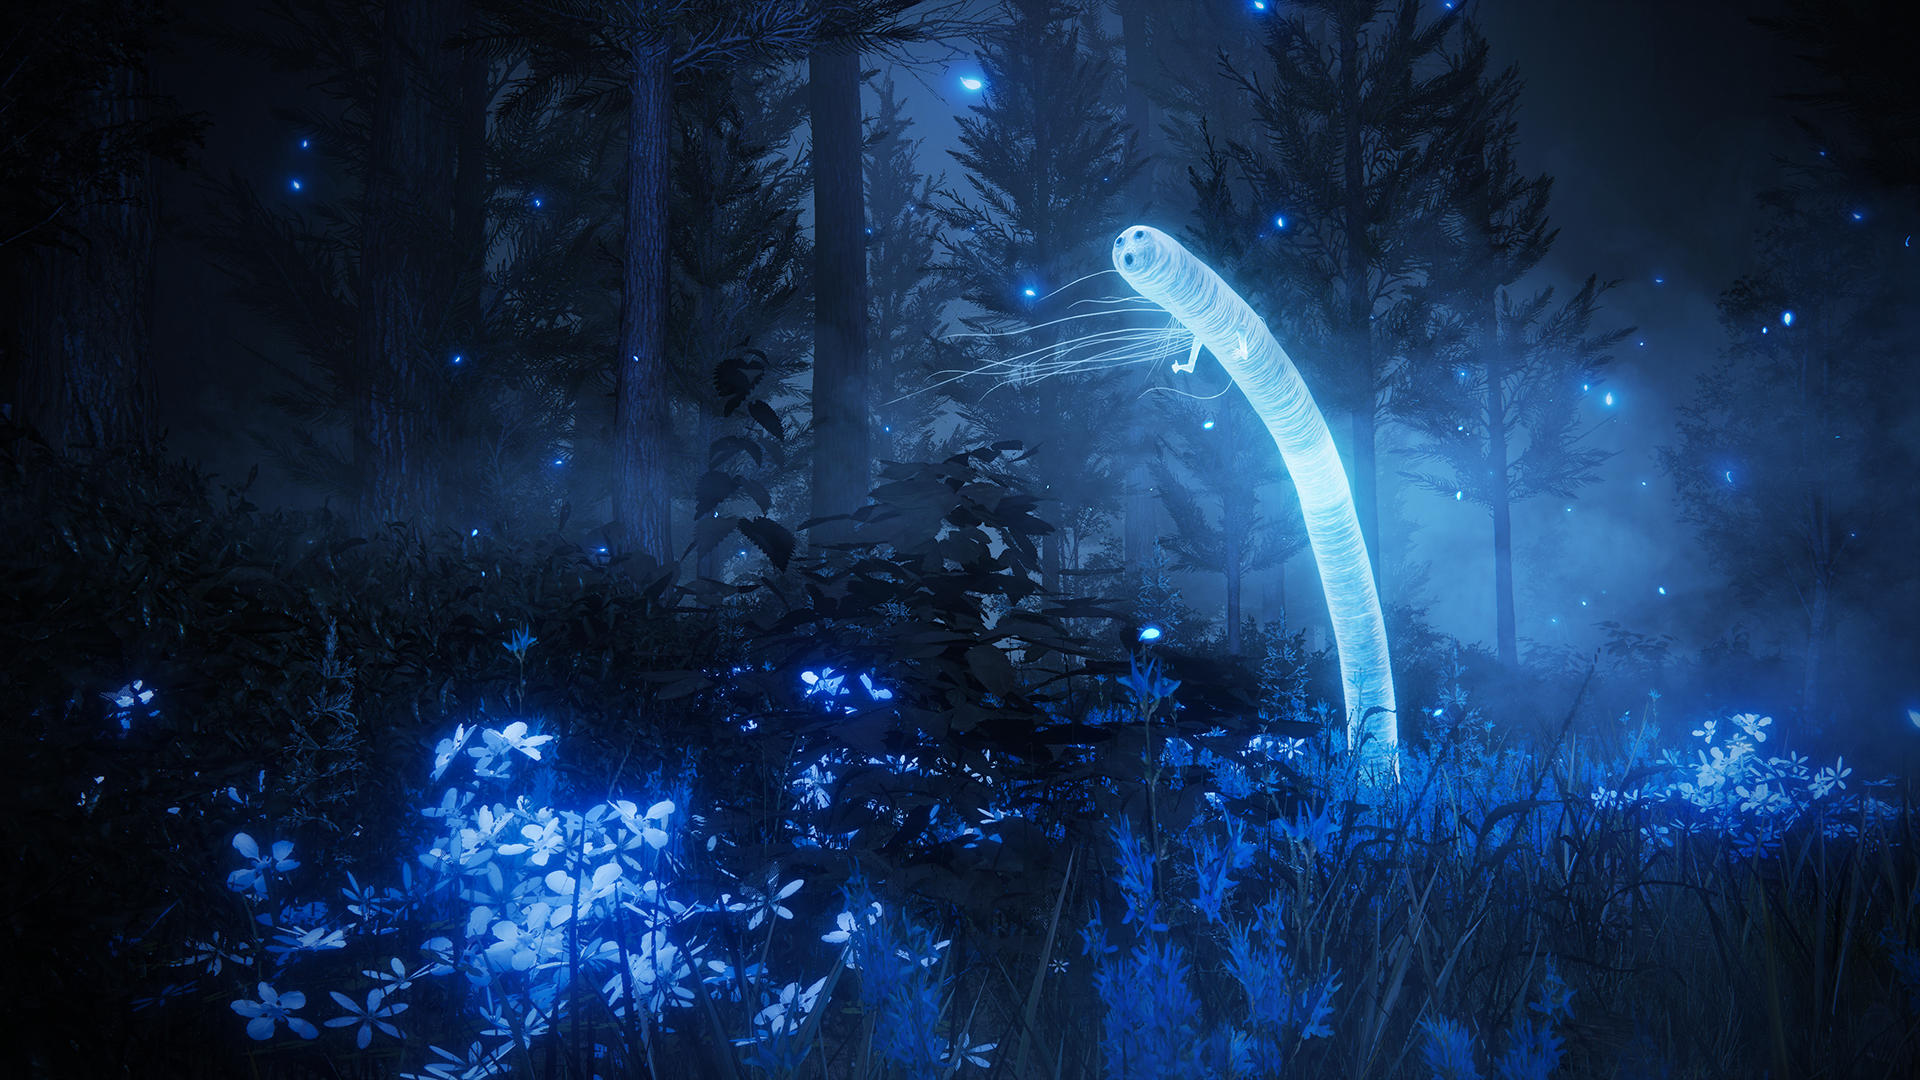 Shadow of the Erdtree verspricht wieder viele fremdartige Schauplätze wie diesen düsteren Wald, in dem magischen Blumen blaues Licht abgeben und sich ein schauriger Geisterwurm rekelt. 